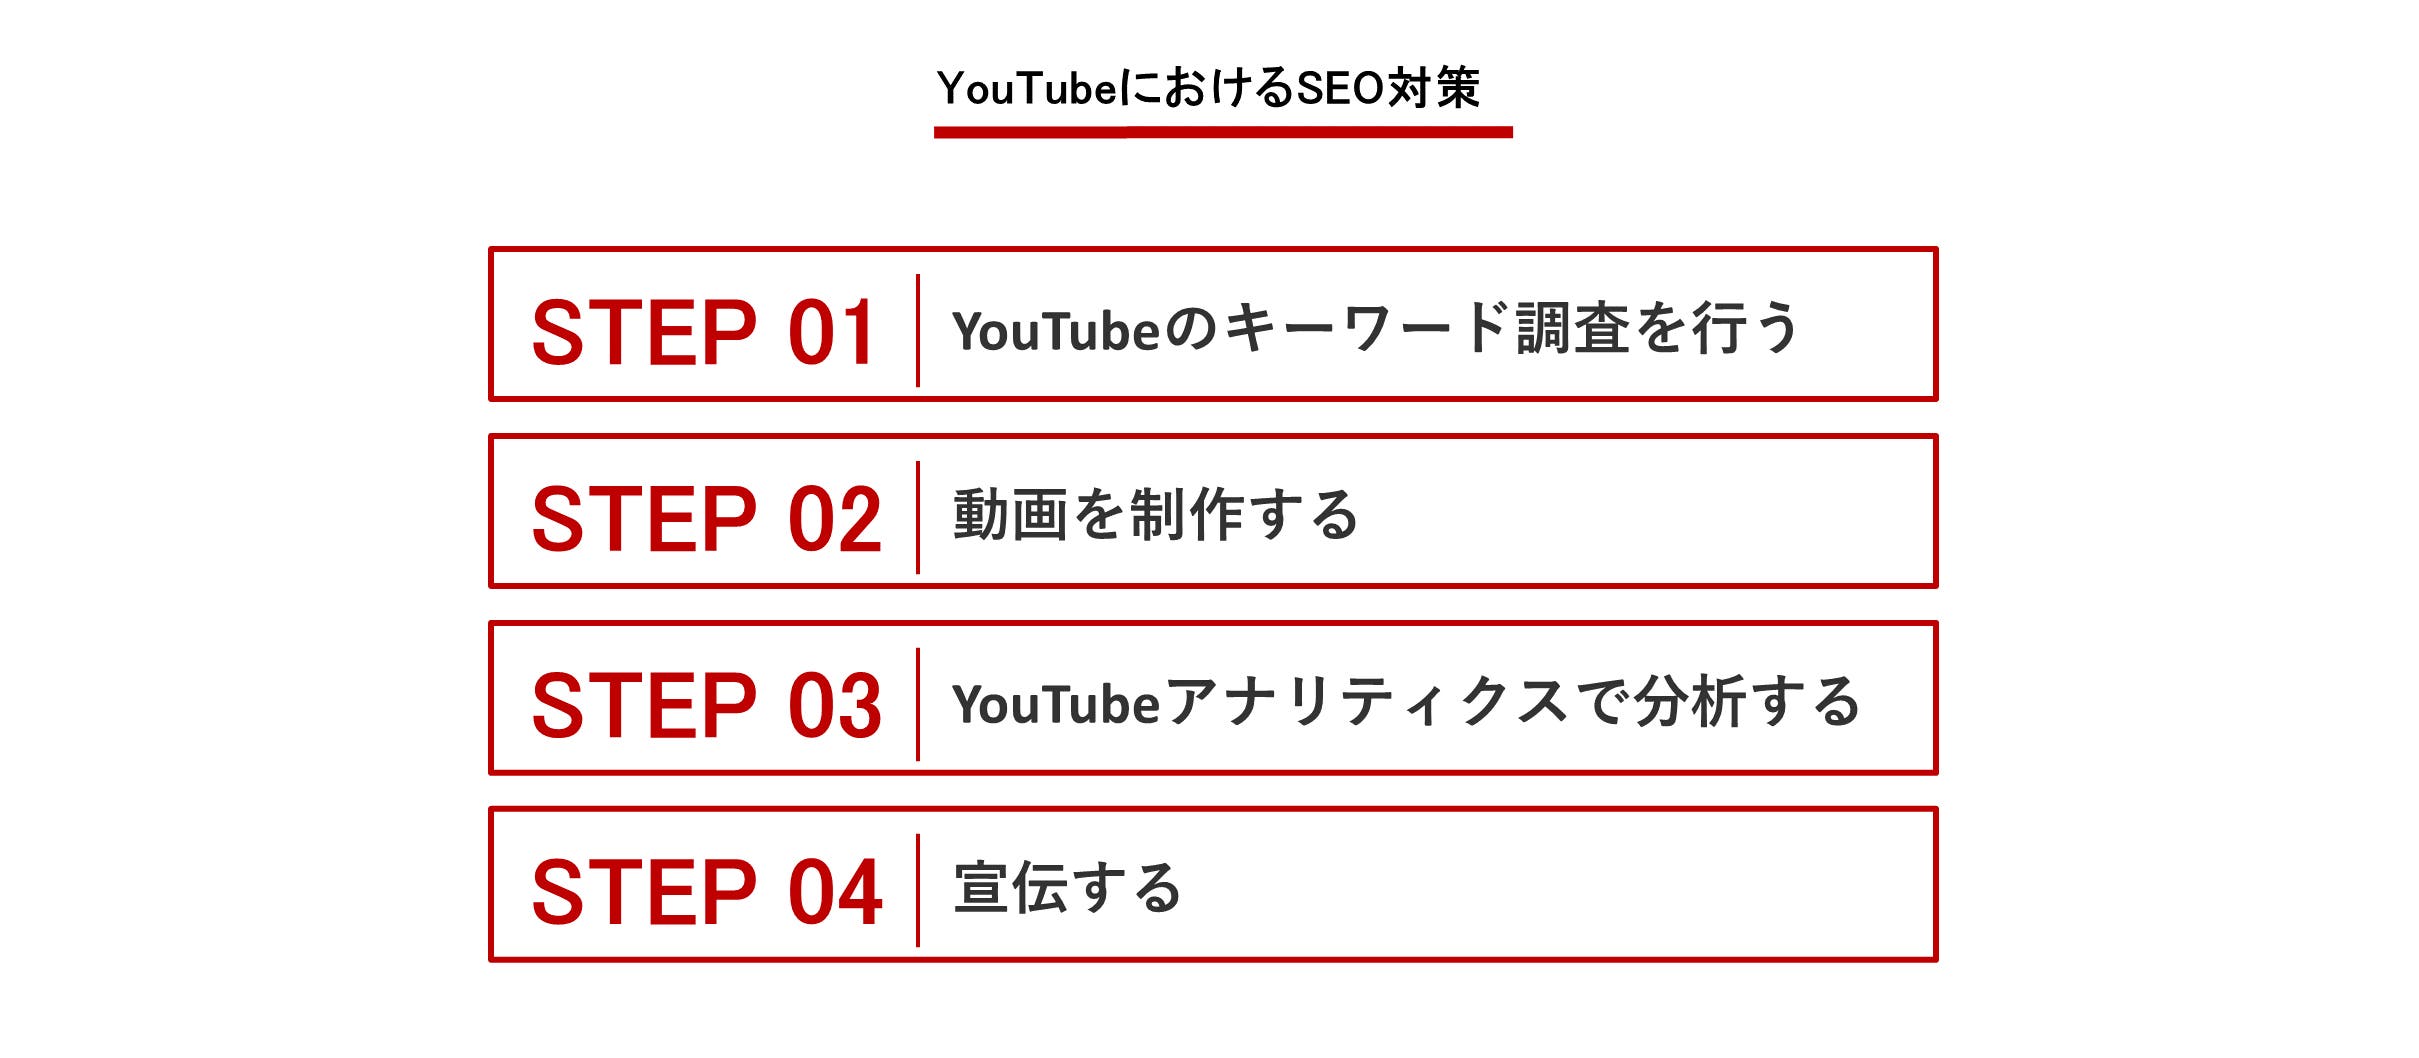 youtube seo